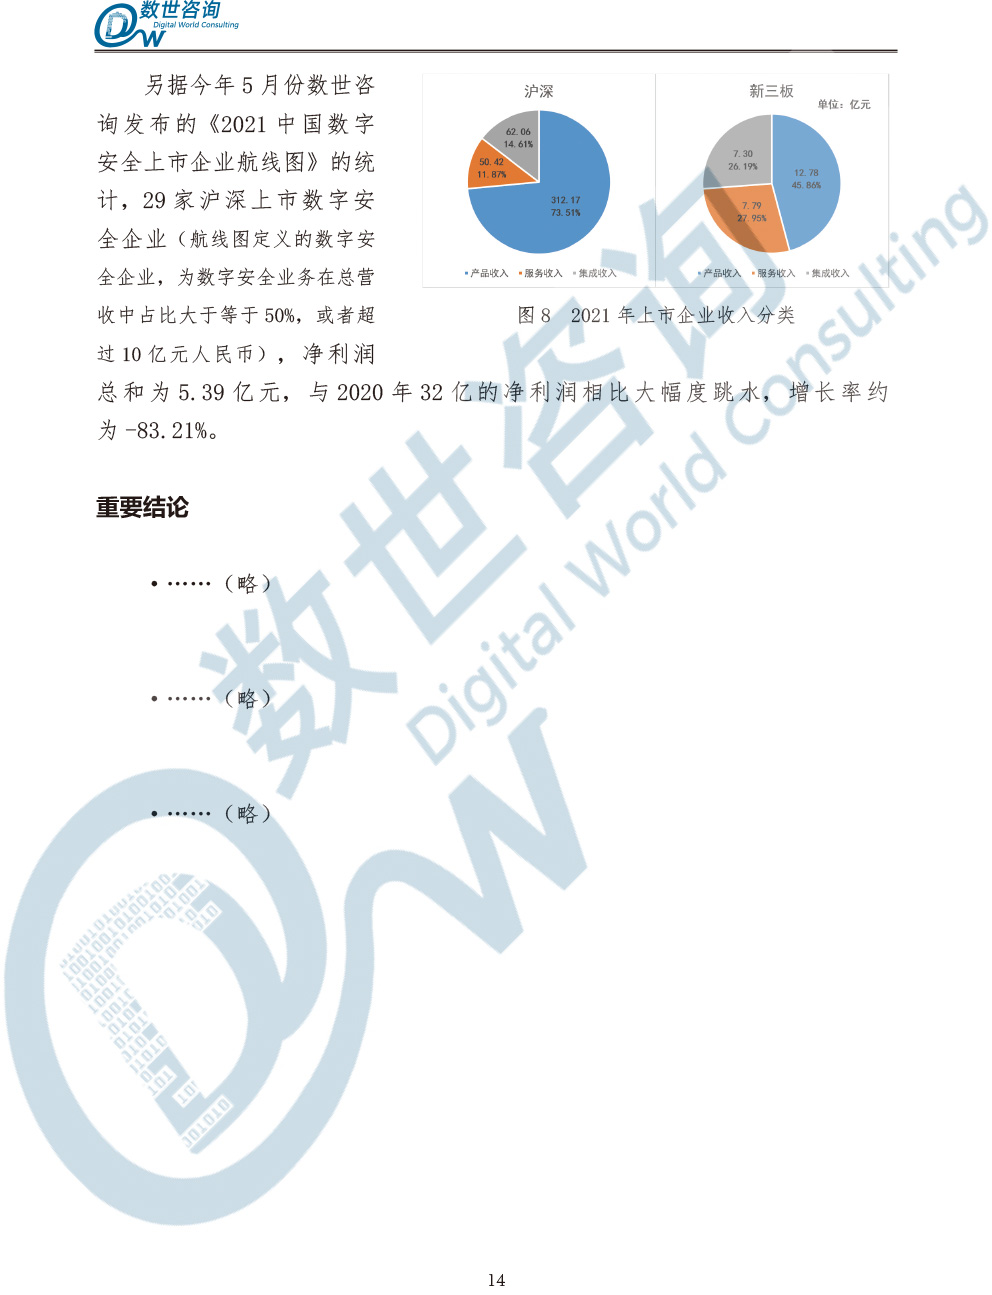 中国数字安全产业统计与分析报告(2022)图-21.jpg